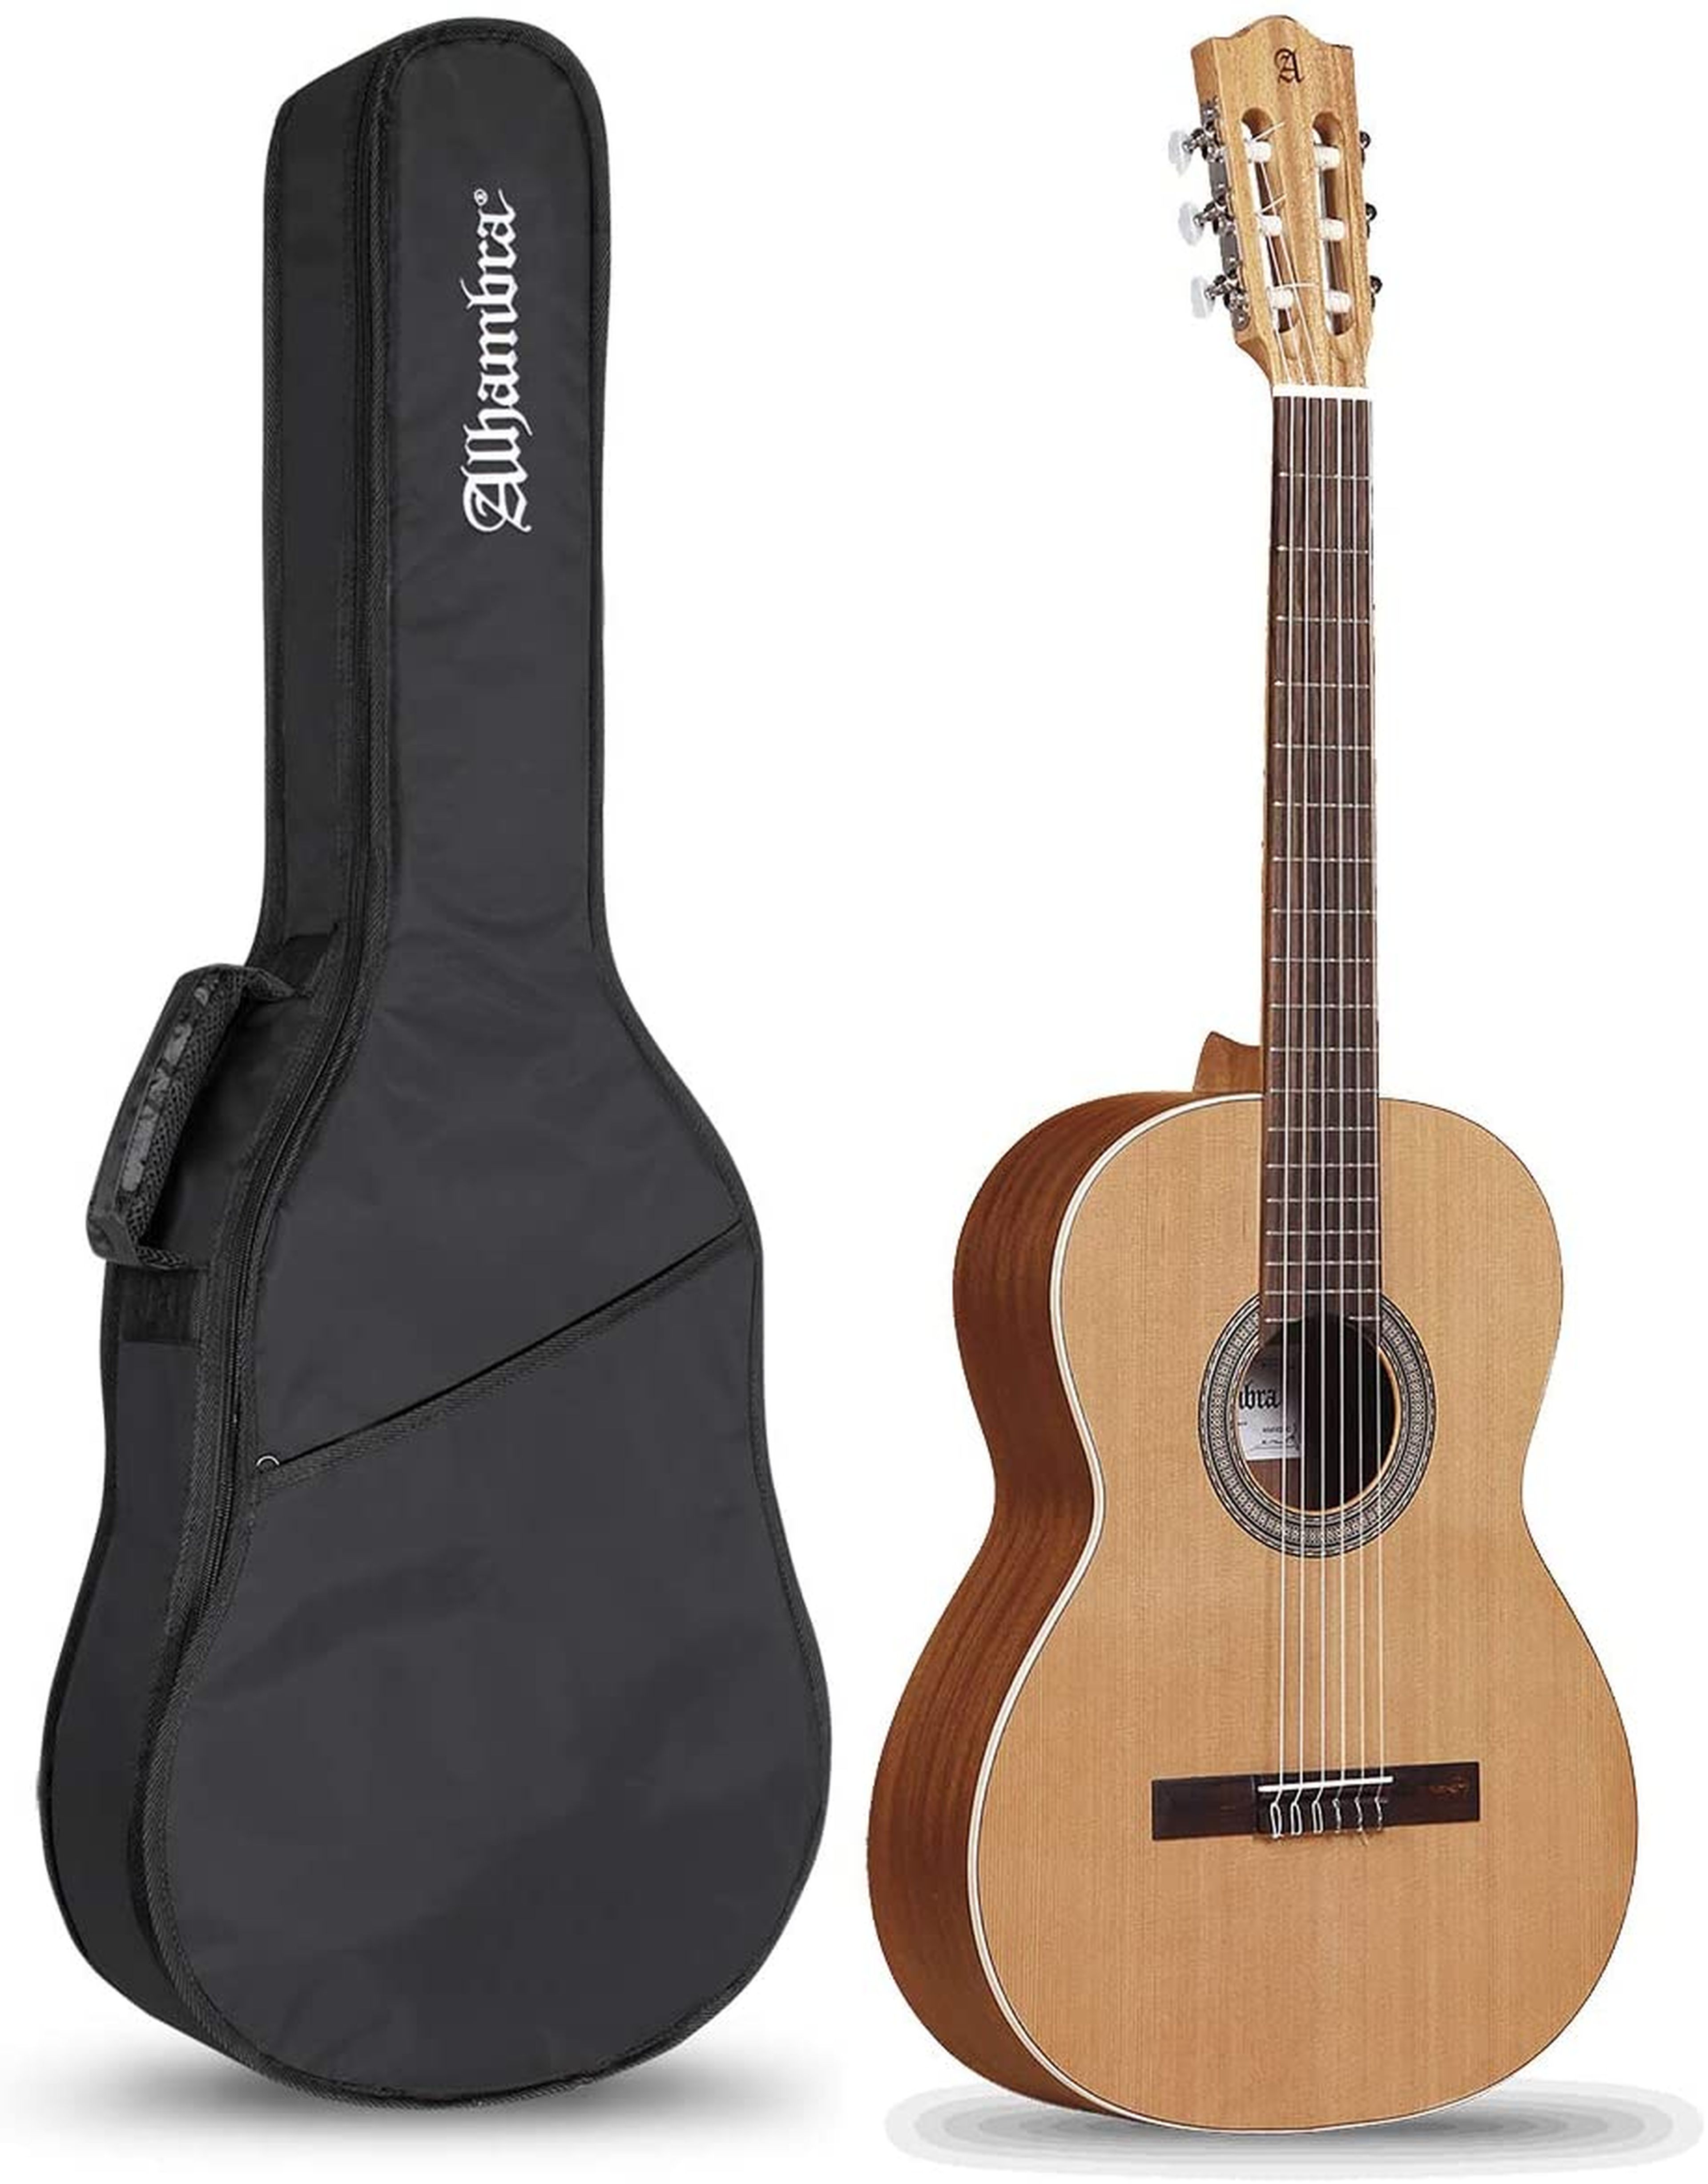 Классическая испанская гитара. Yamaha eg112. Гитара Пако Кастильо. Ямаха 800 FD гитара. Гитары Alvaro 40.